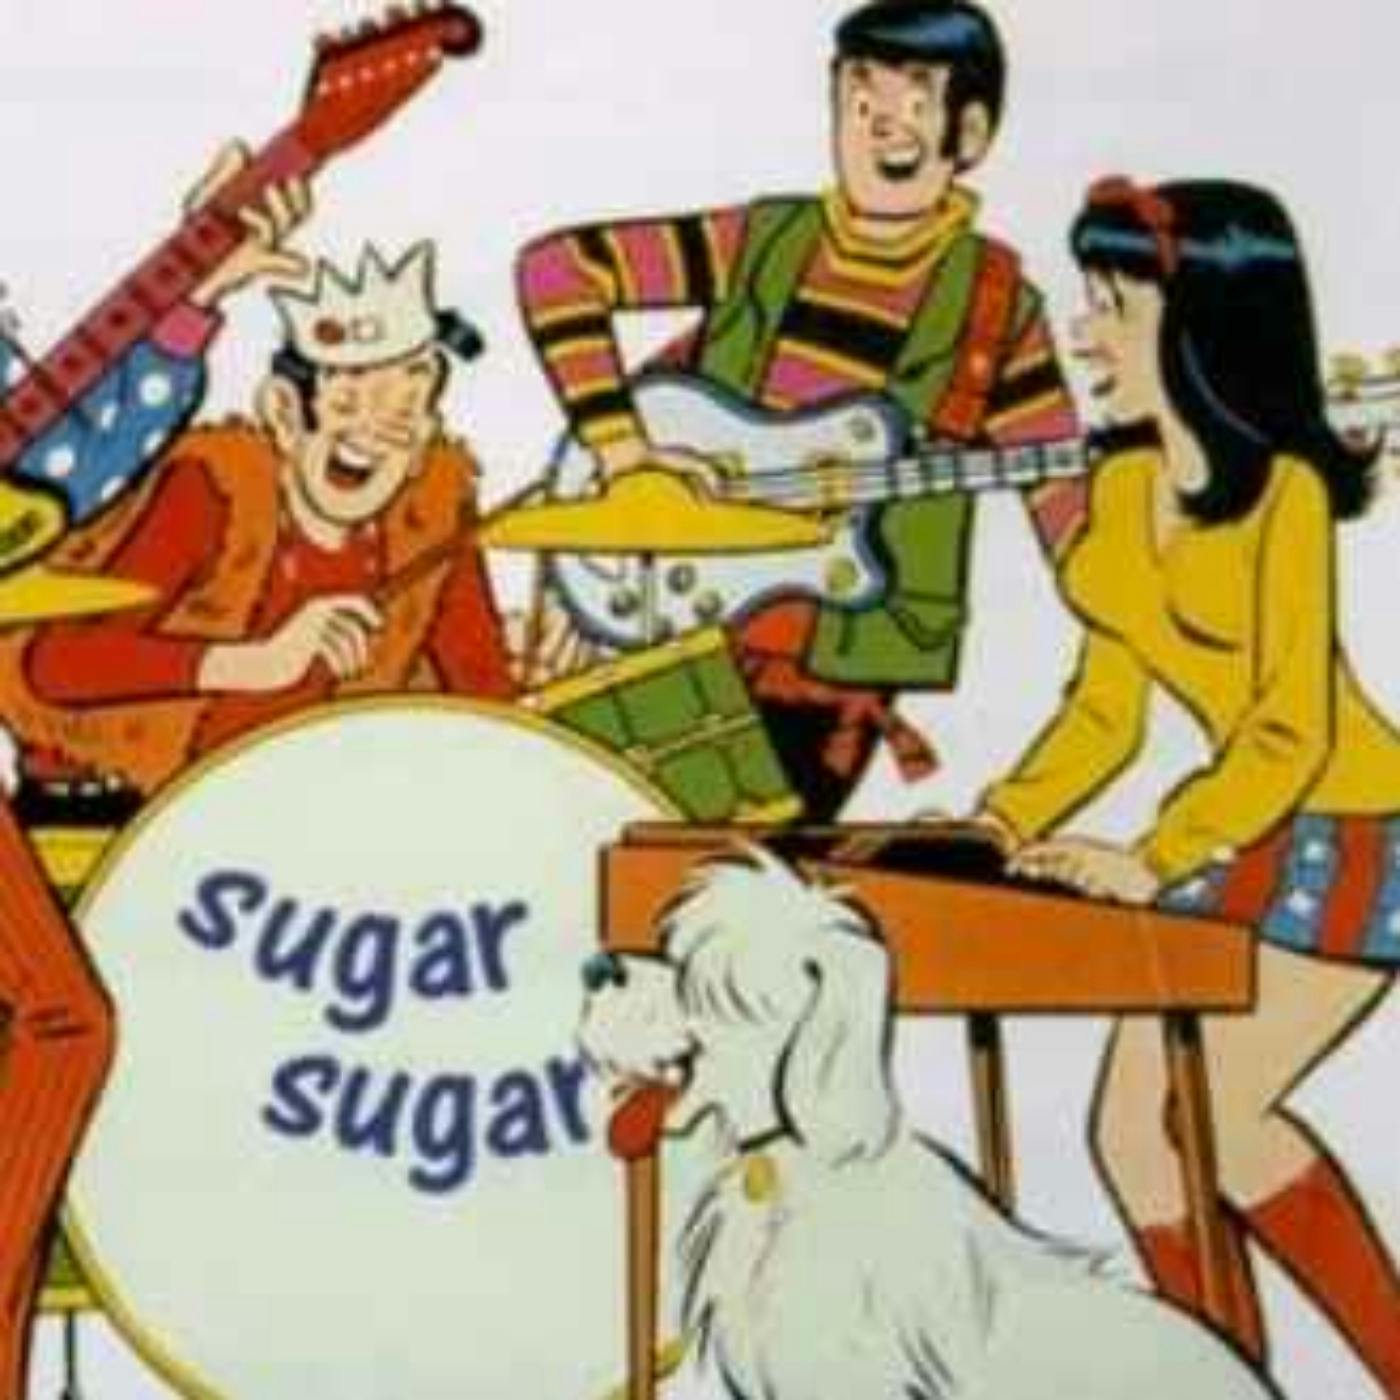 Sugar, Sugar and the Cartoon Band